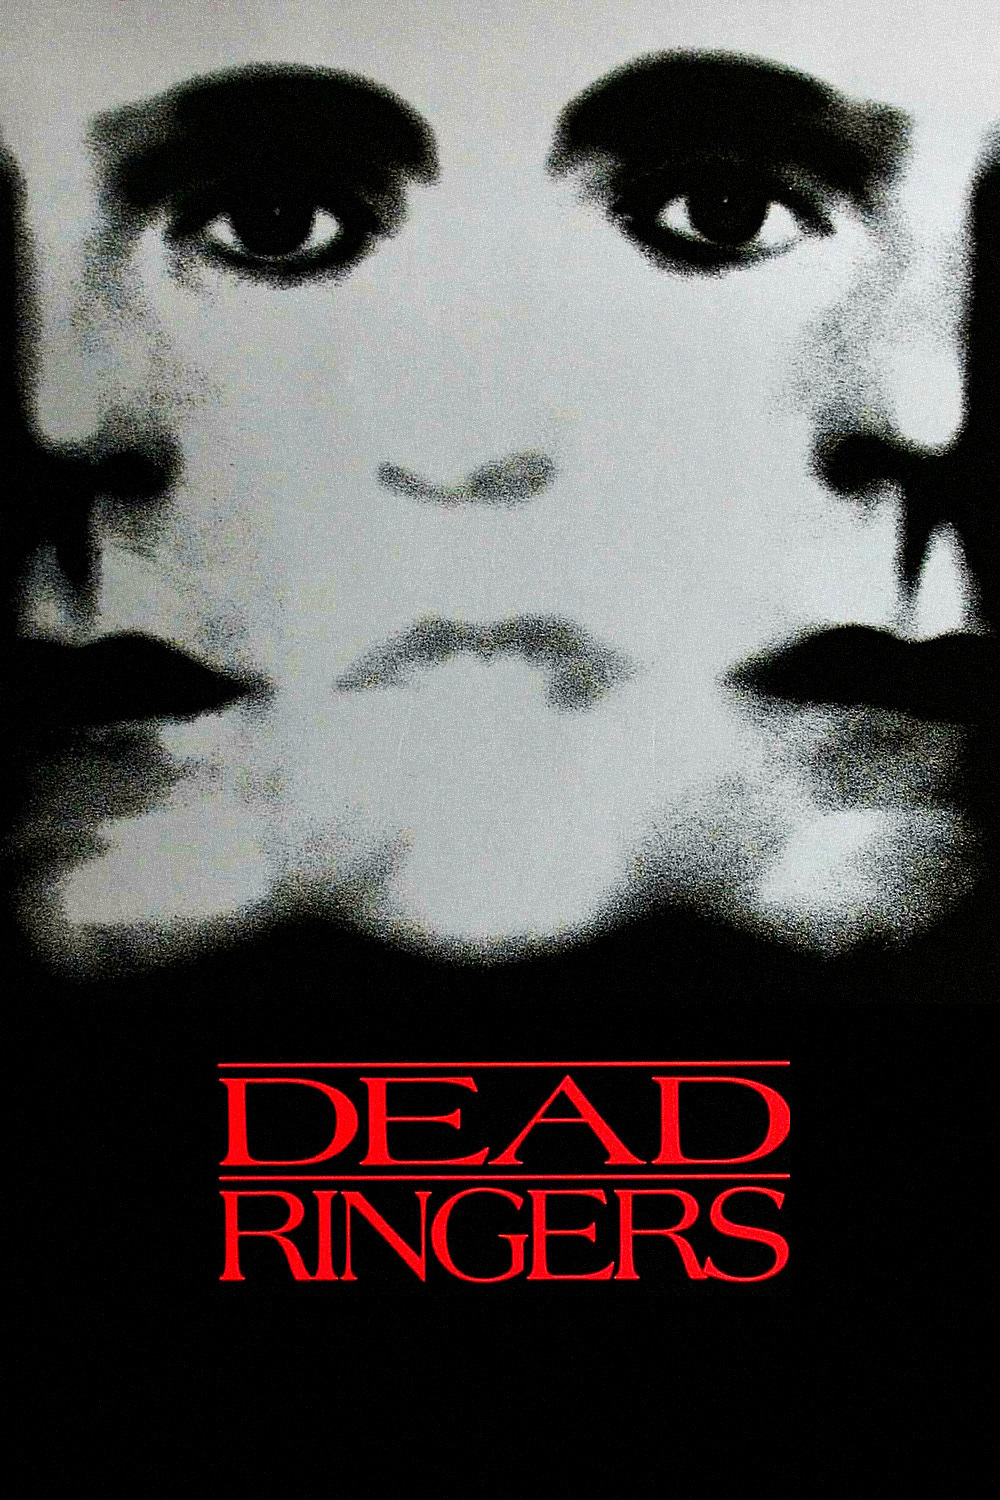 Dead Ringers Poster